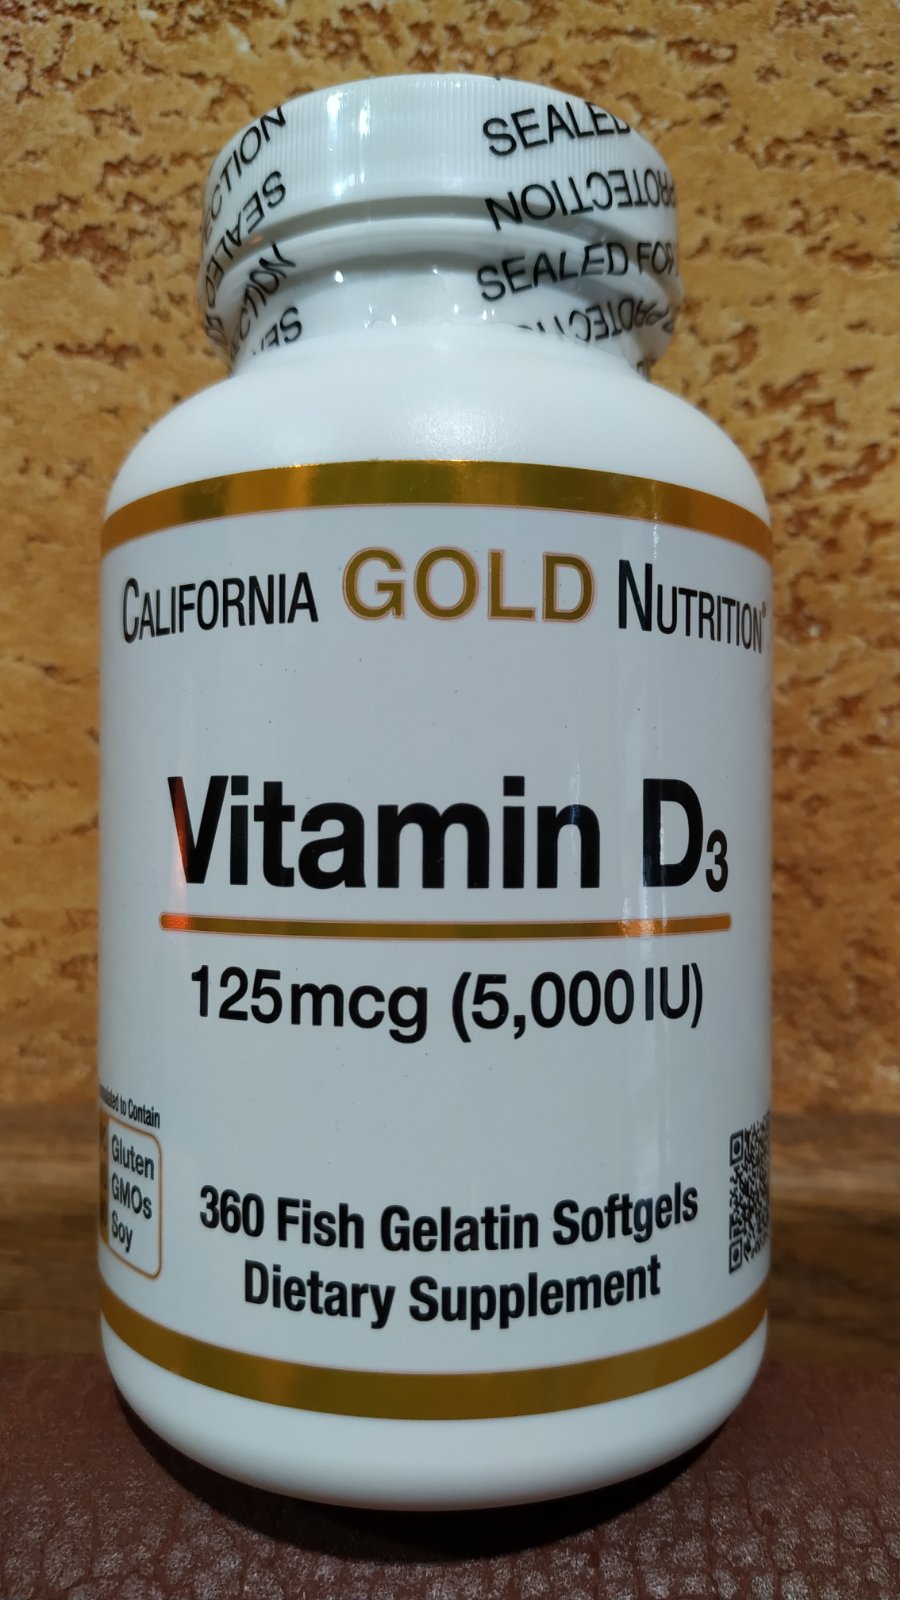 Vitamin D3 Здоровые кости и зубы, иммунитет, поддержка зрения, США Калифорния